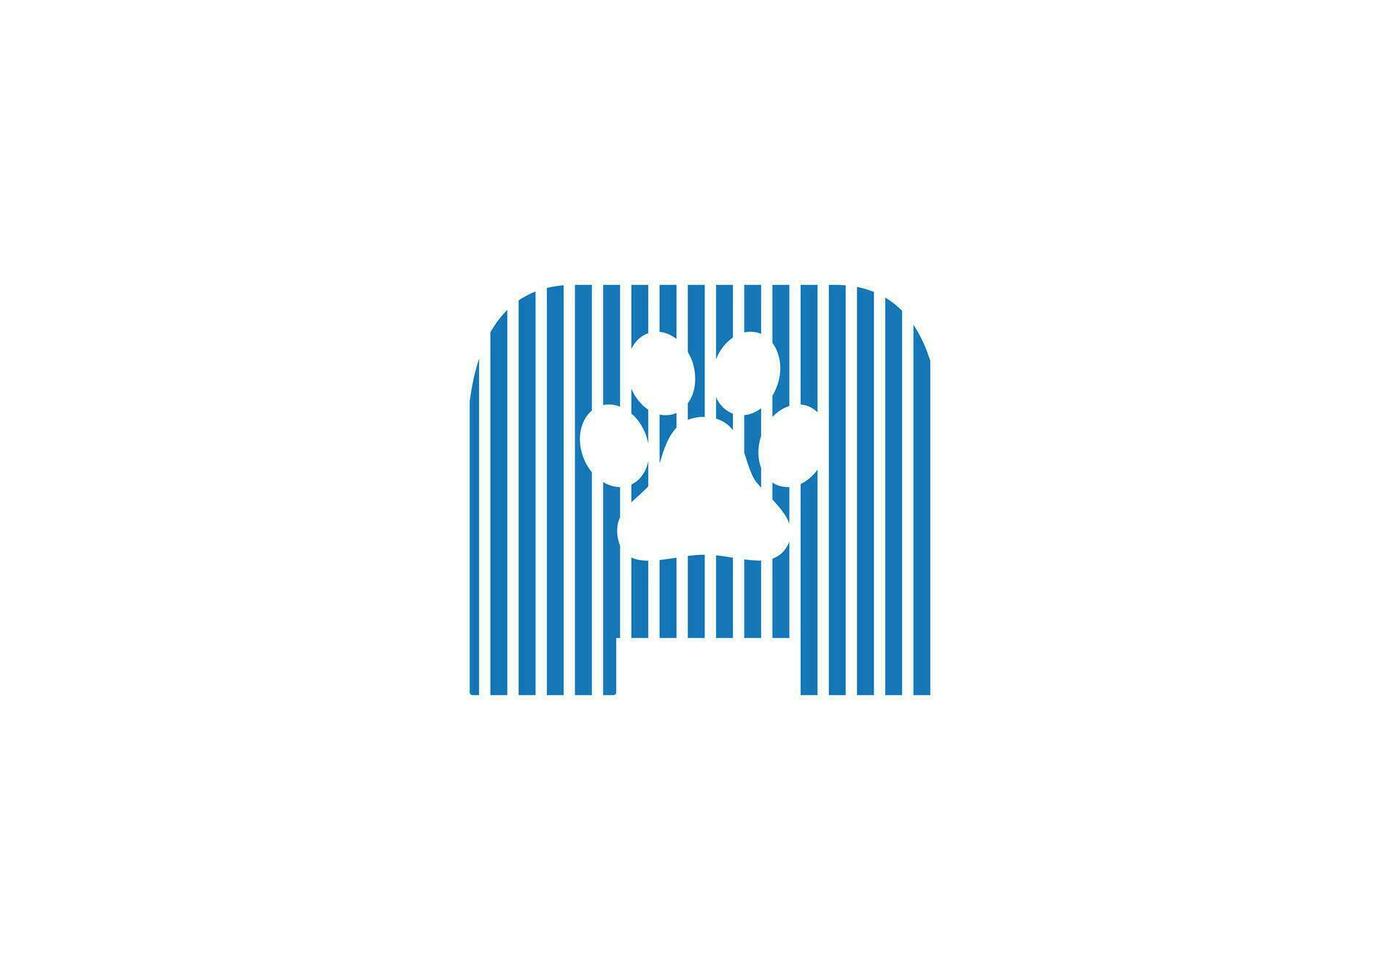 creativo cane e testo aggiunto animale logo icona design vettore